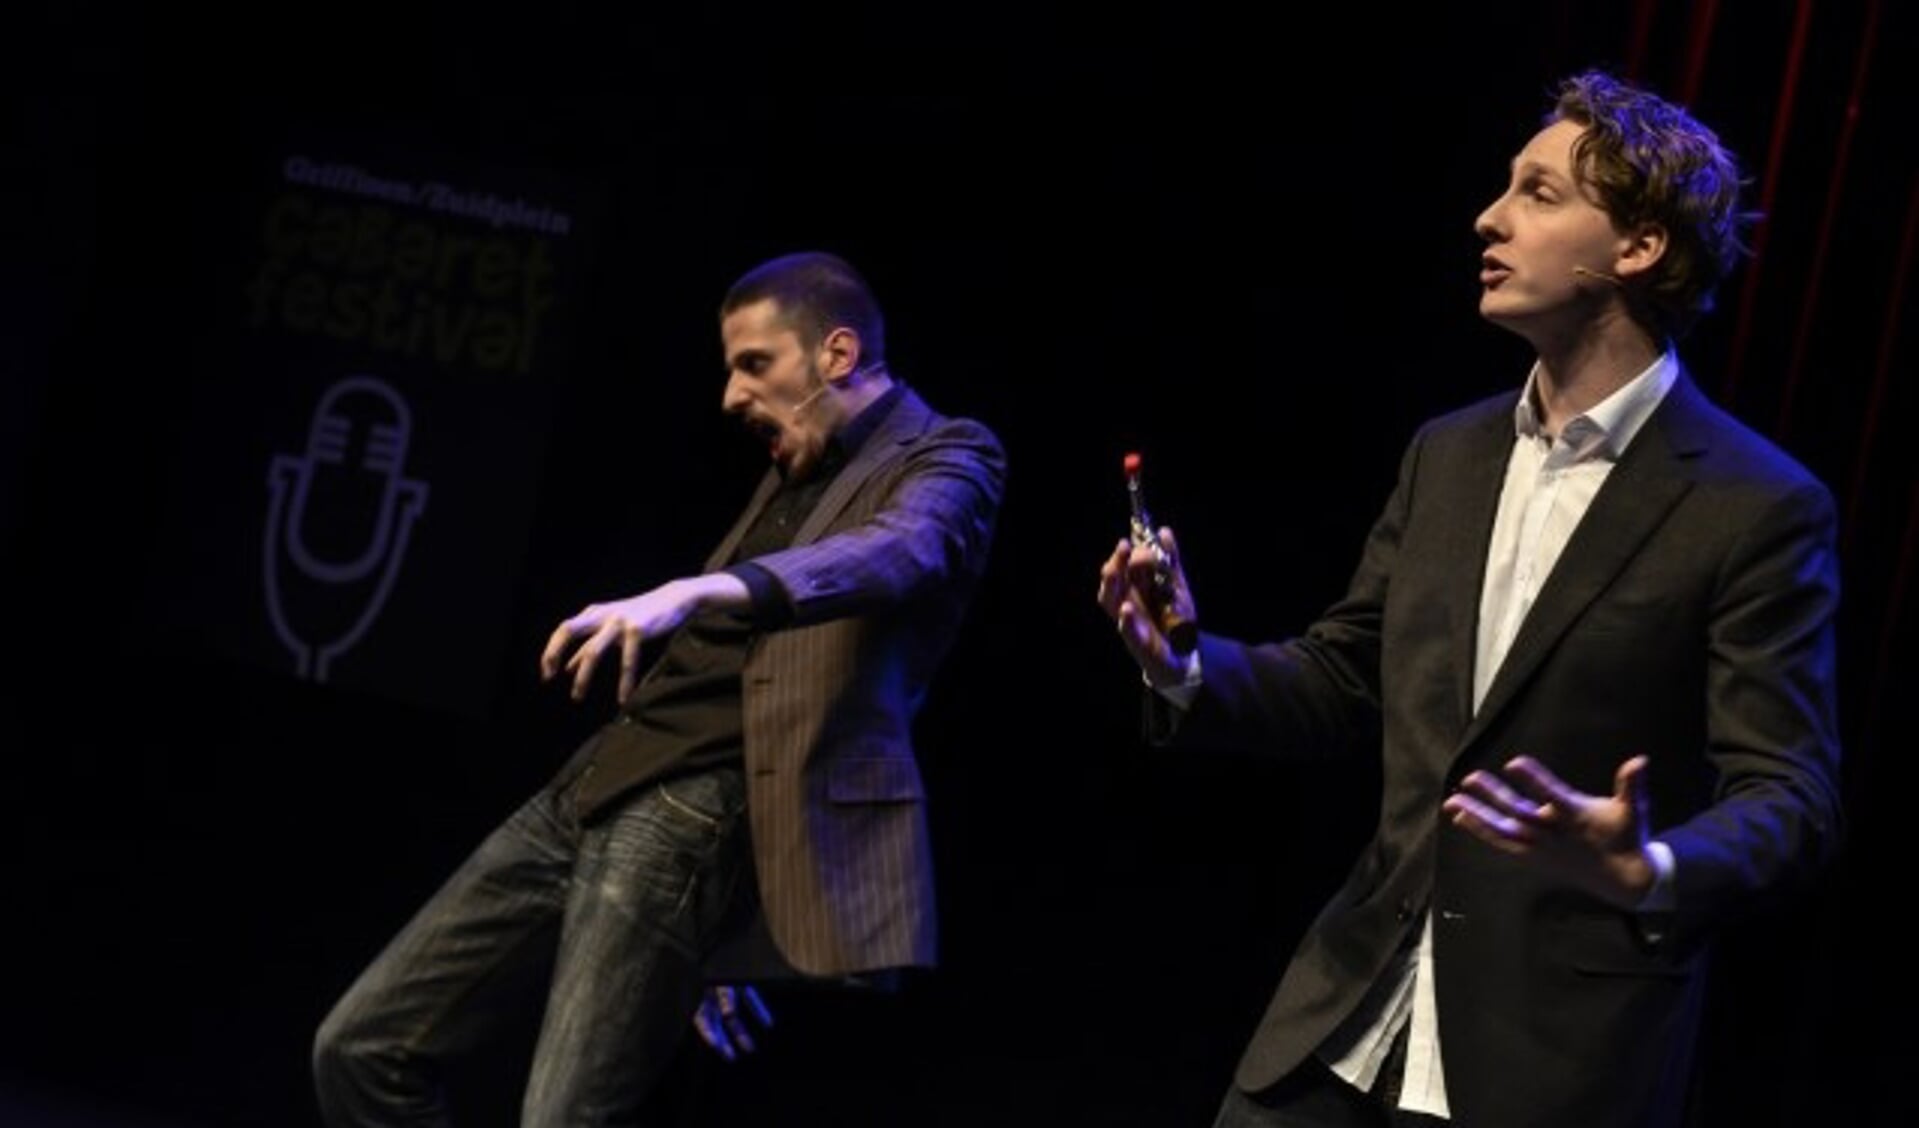 Het cabaretduo Roovers en Van Leeuwen is één van de vier optredens van de Cabaretpoel.